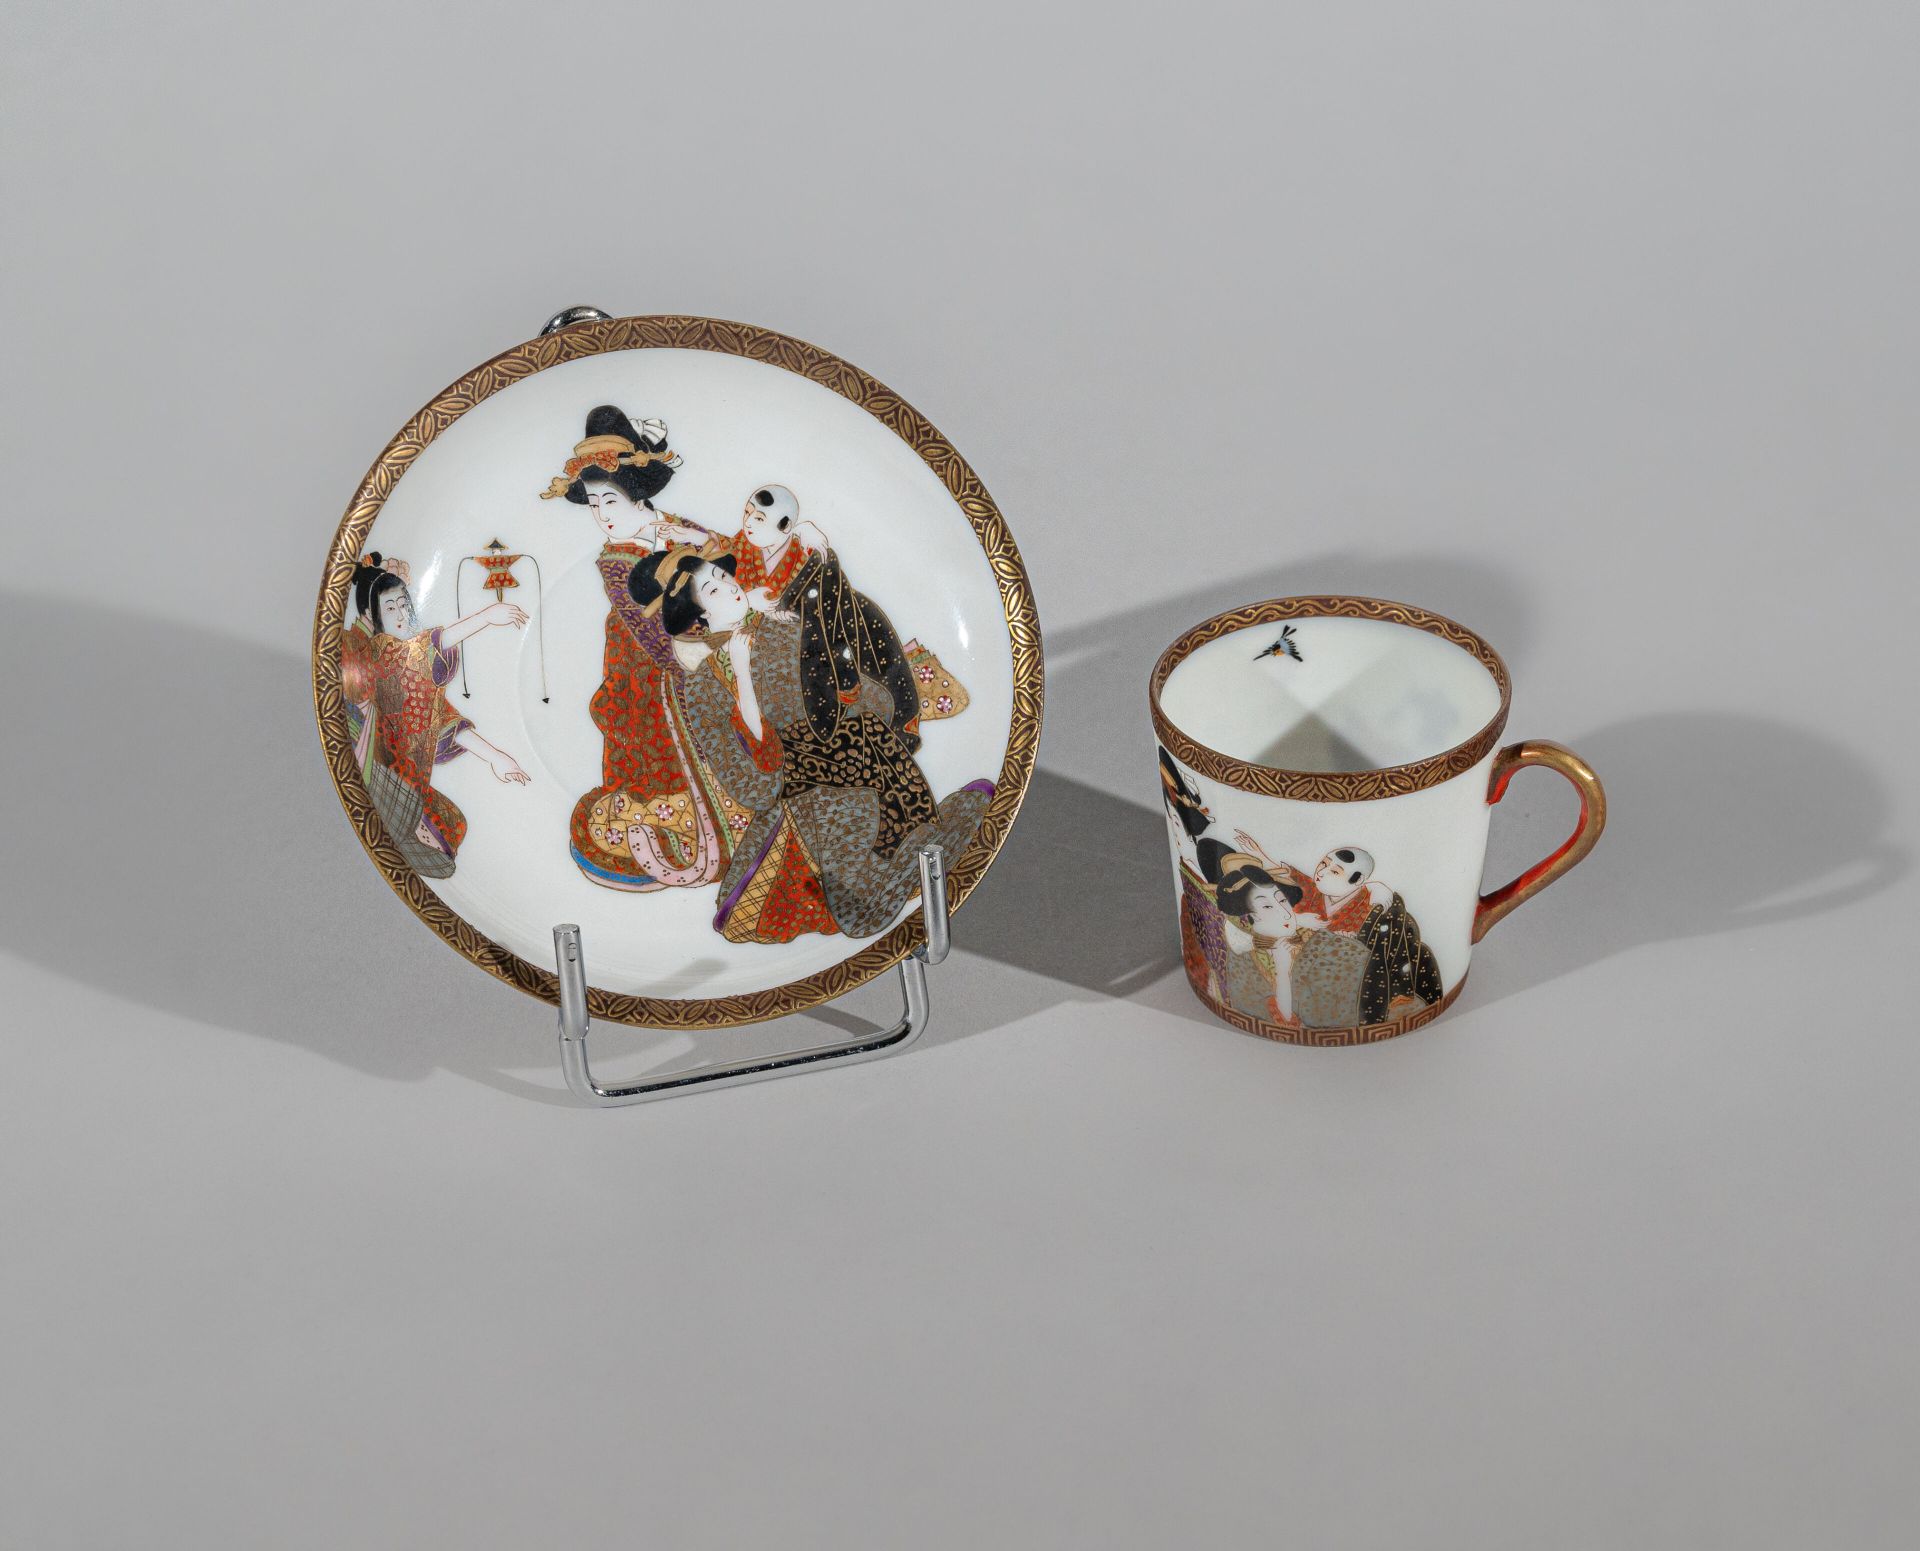 Null 小珐琅瓷杯和碟，日本，明治时期（1868-1912 年） 
带有妇女和儿童的珐琅装饰，边缘有精美的楣饰，杯中有一只鸟，有 "Wataya sei"（杯&hellip;